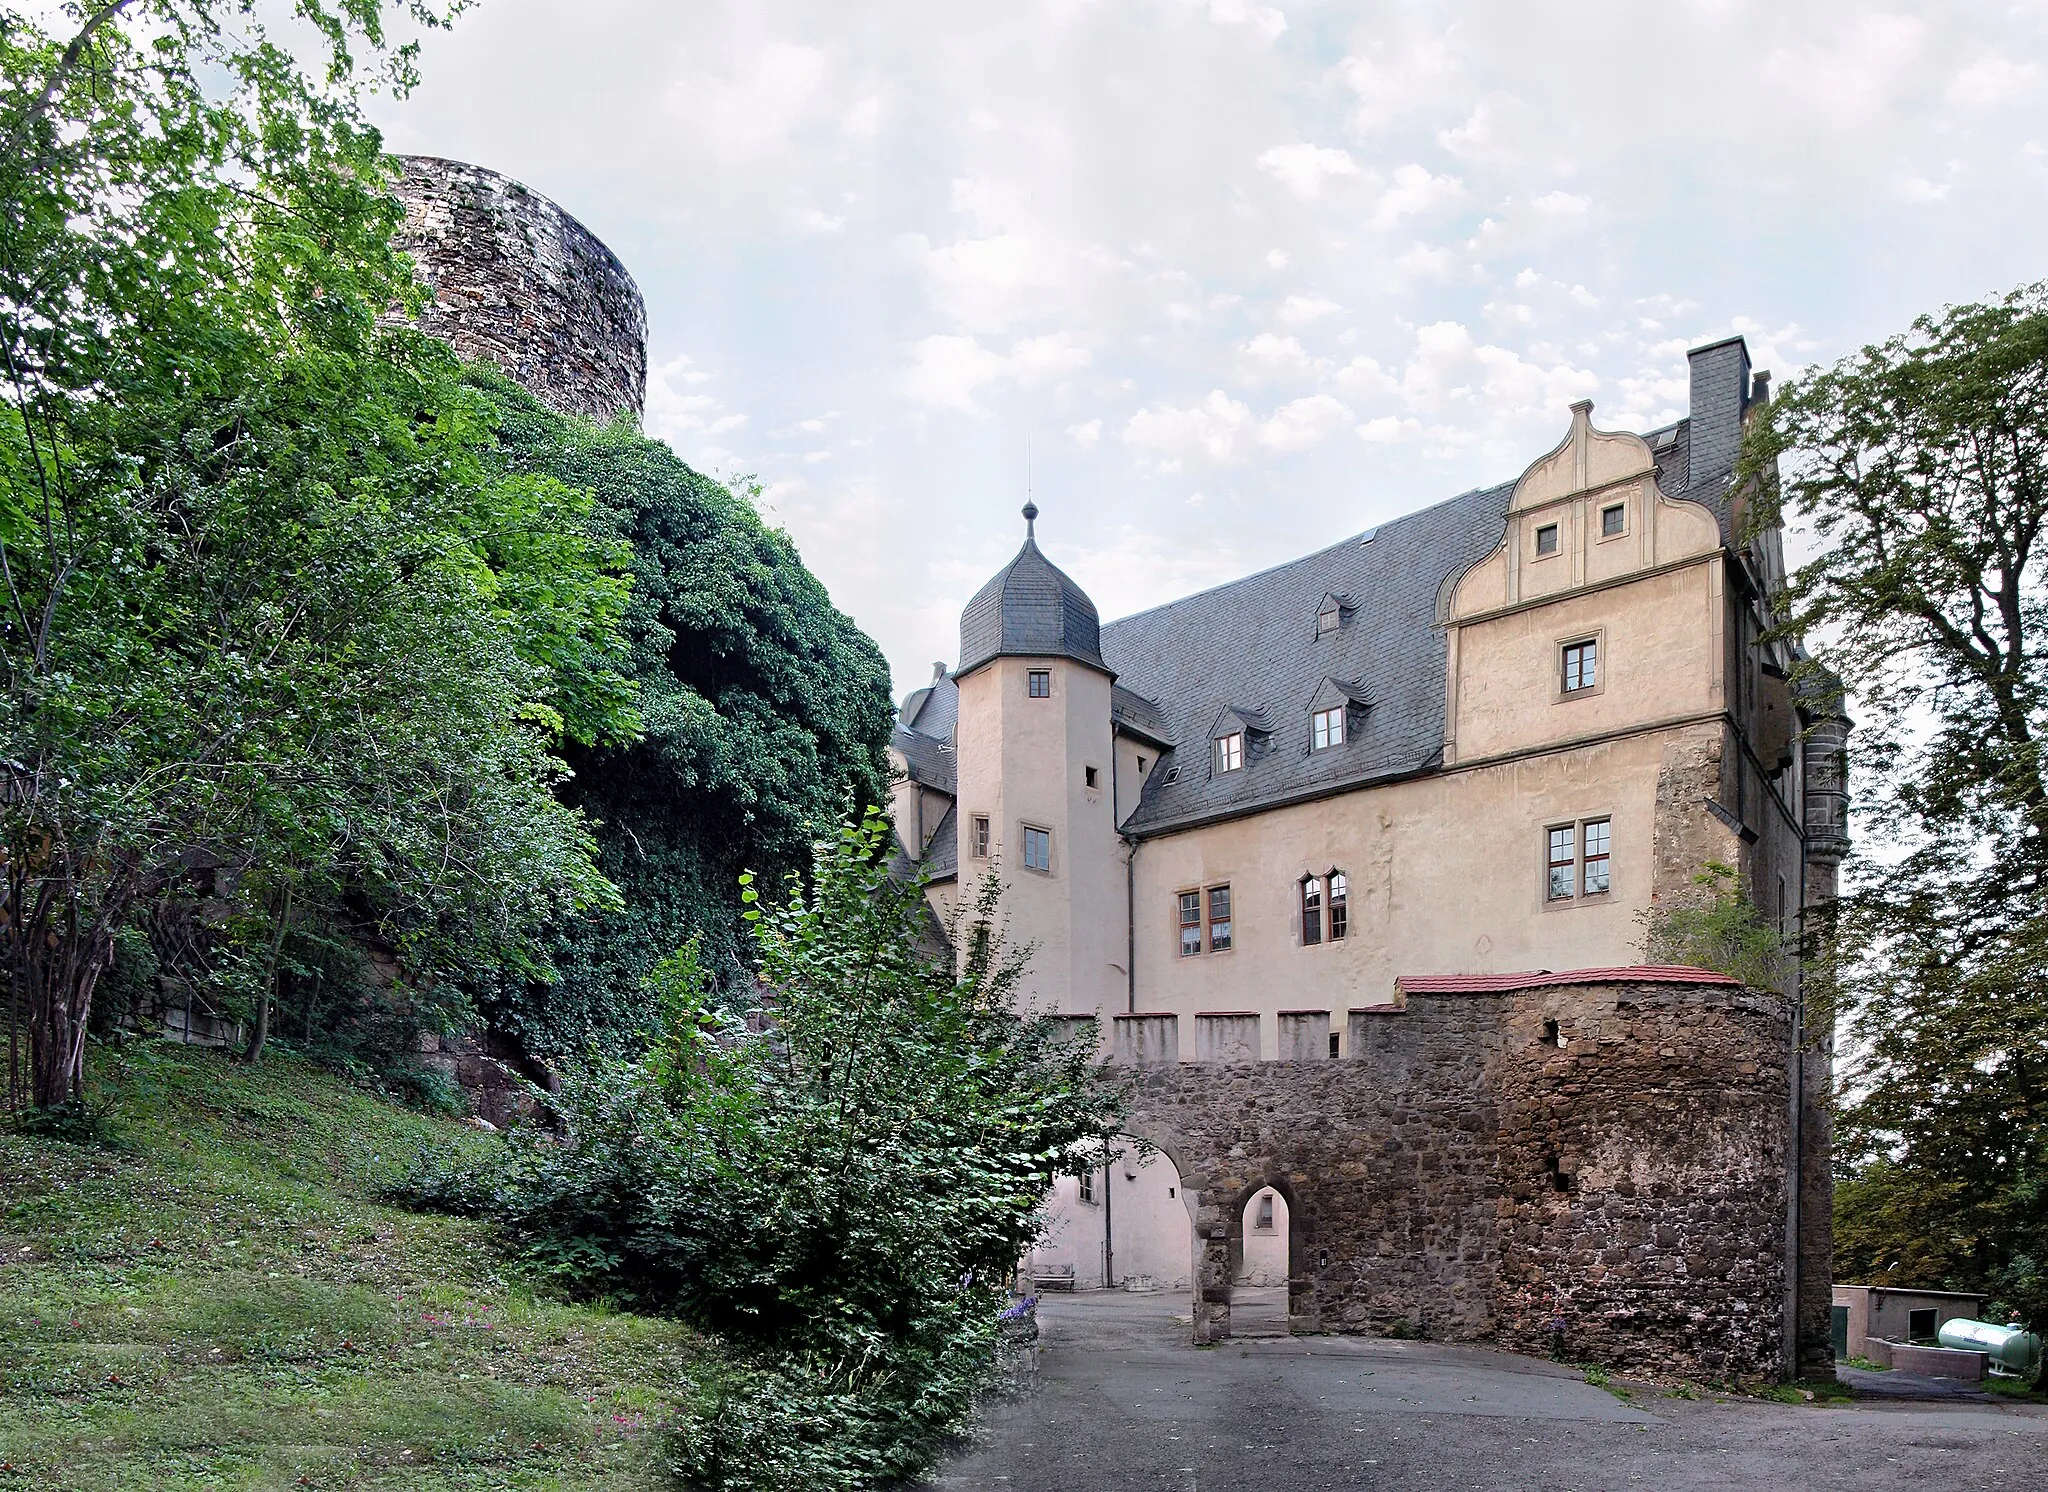 Photo showing: 04.07.2012    07333  Könitz (Unterwellenborn), Schloßberg 16: Schloß (GMP: 50.651241,11.489464). Um 800 begann der Bau der Burganlage durch einen Ritter von Conz. Von seinem Namen leitet sich auch der Name des Adelsgeschlechts Könitz ab. Die  Burg ist eine 1438 urkundlich genannte, unregelmäßige Anlage. 1562 wird der Bau des Schlosses in seiner noch heute zu sehenden Form vollendet. Im Westen und Süden je ein Flügel, im Osten mächtiger Bergfried, im Hof Treppenturm mit reichem spätgotischem Balkon, im Westflügel Remter mit Balkendecke. 1608 fällt das Schloss an die Grafen von Schwarzburg-Rudolstadt. In der DDR-Zeit dient das Schloß seit 1955 als Unterkunft für geistig behinderte Menschen / Feierabendheim. Es wird heute [... 2012] von der Arbeiterwohlfahrt Saalfeld-Rudolstadt geführt. Sicht von der Zufahrt.                [DSCNn4209-4211.TIF]20120704015MDR.JPG(c)Blobelt